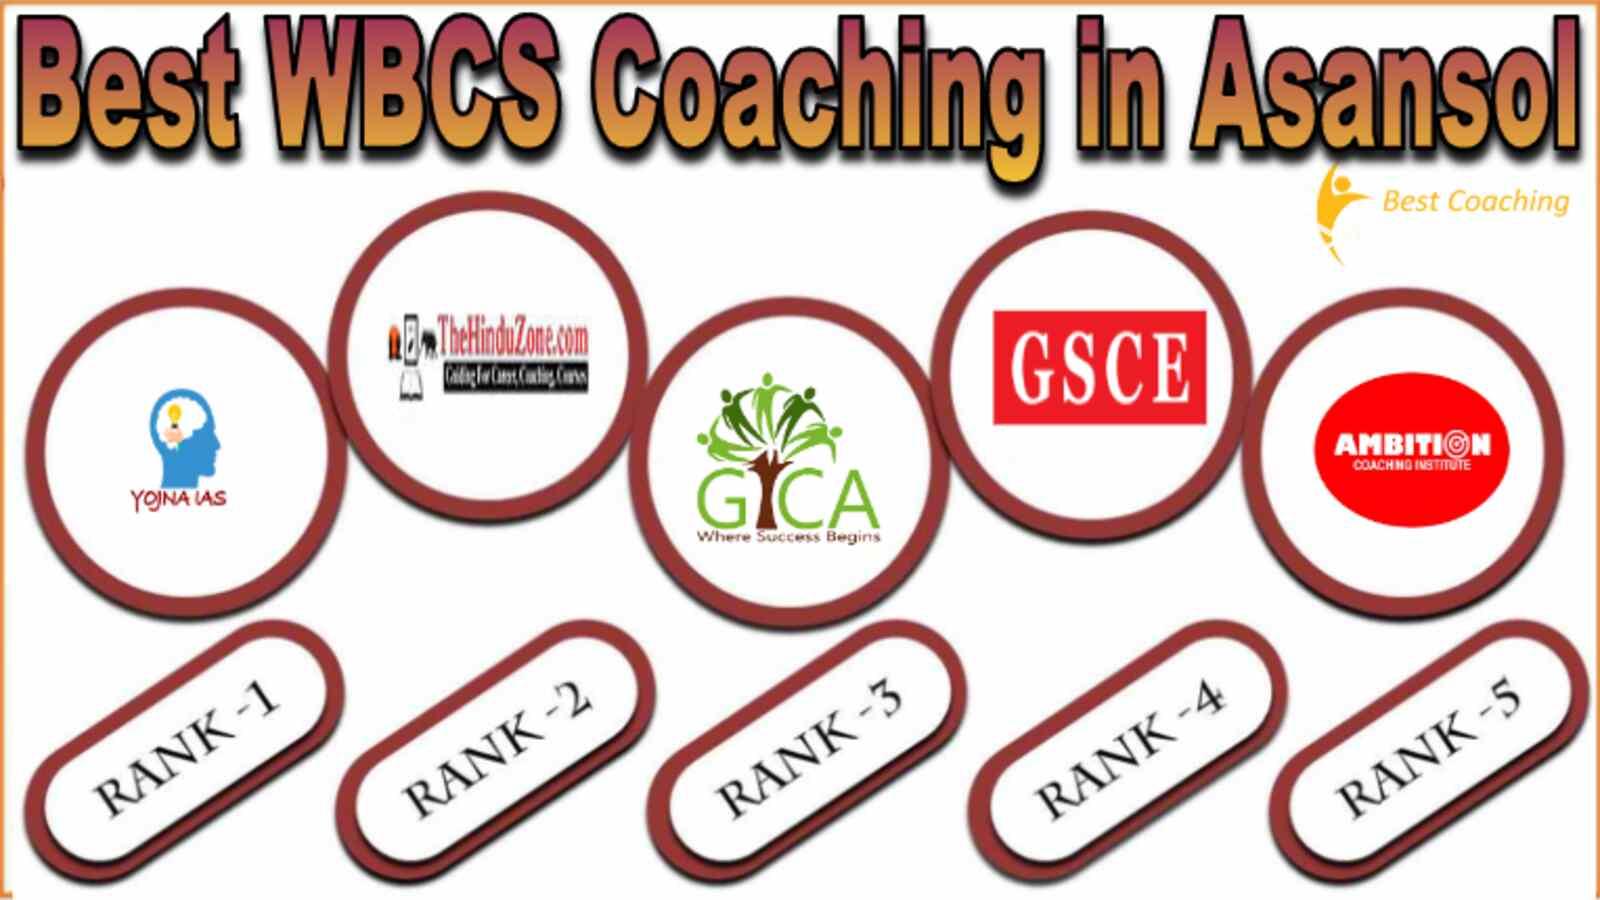 Best WBCS Coaching in Asansol